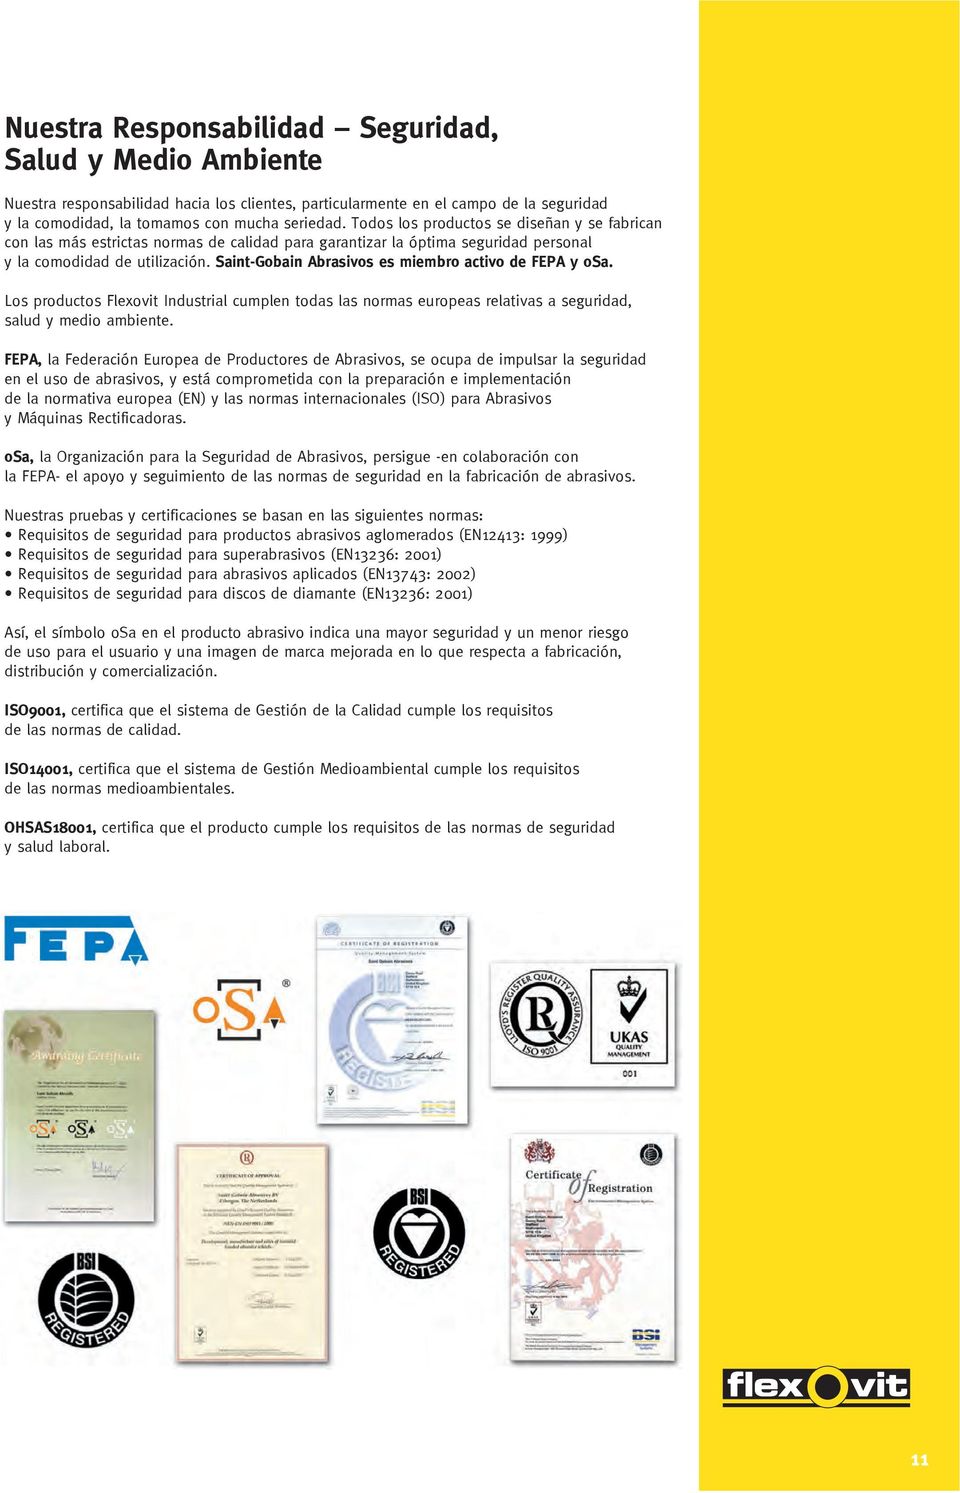 Saint-Gobain Abrasivos es miembro activo de FEPA y osa. Los productos Flexovit Industrial cumplen todas las normas europeas relativas a seguridad, salud y medio ambiente.